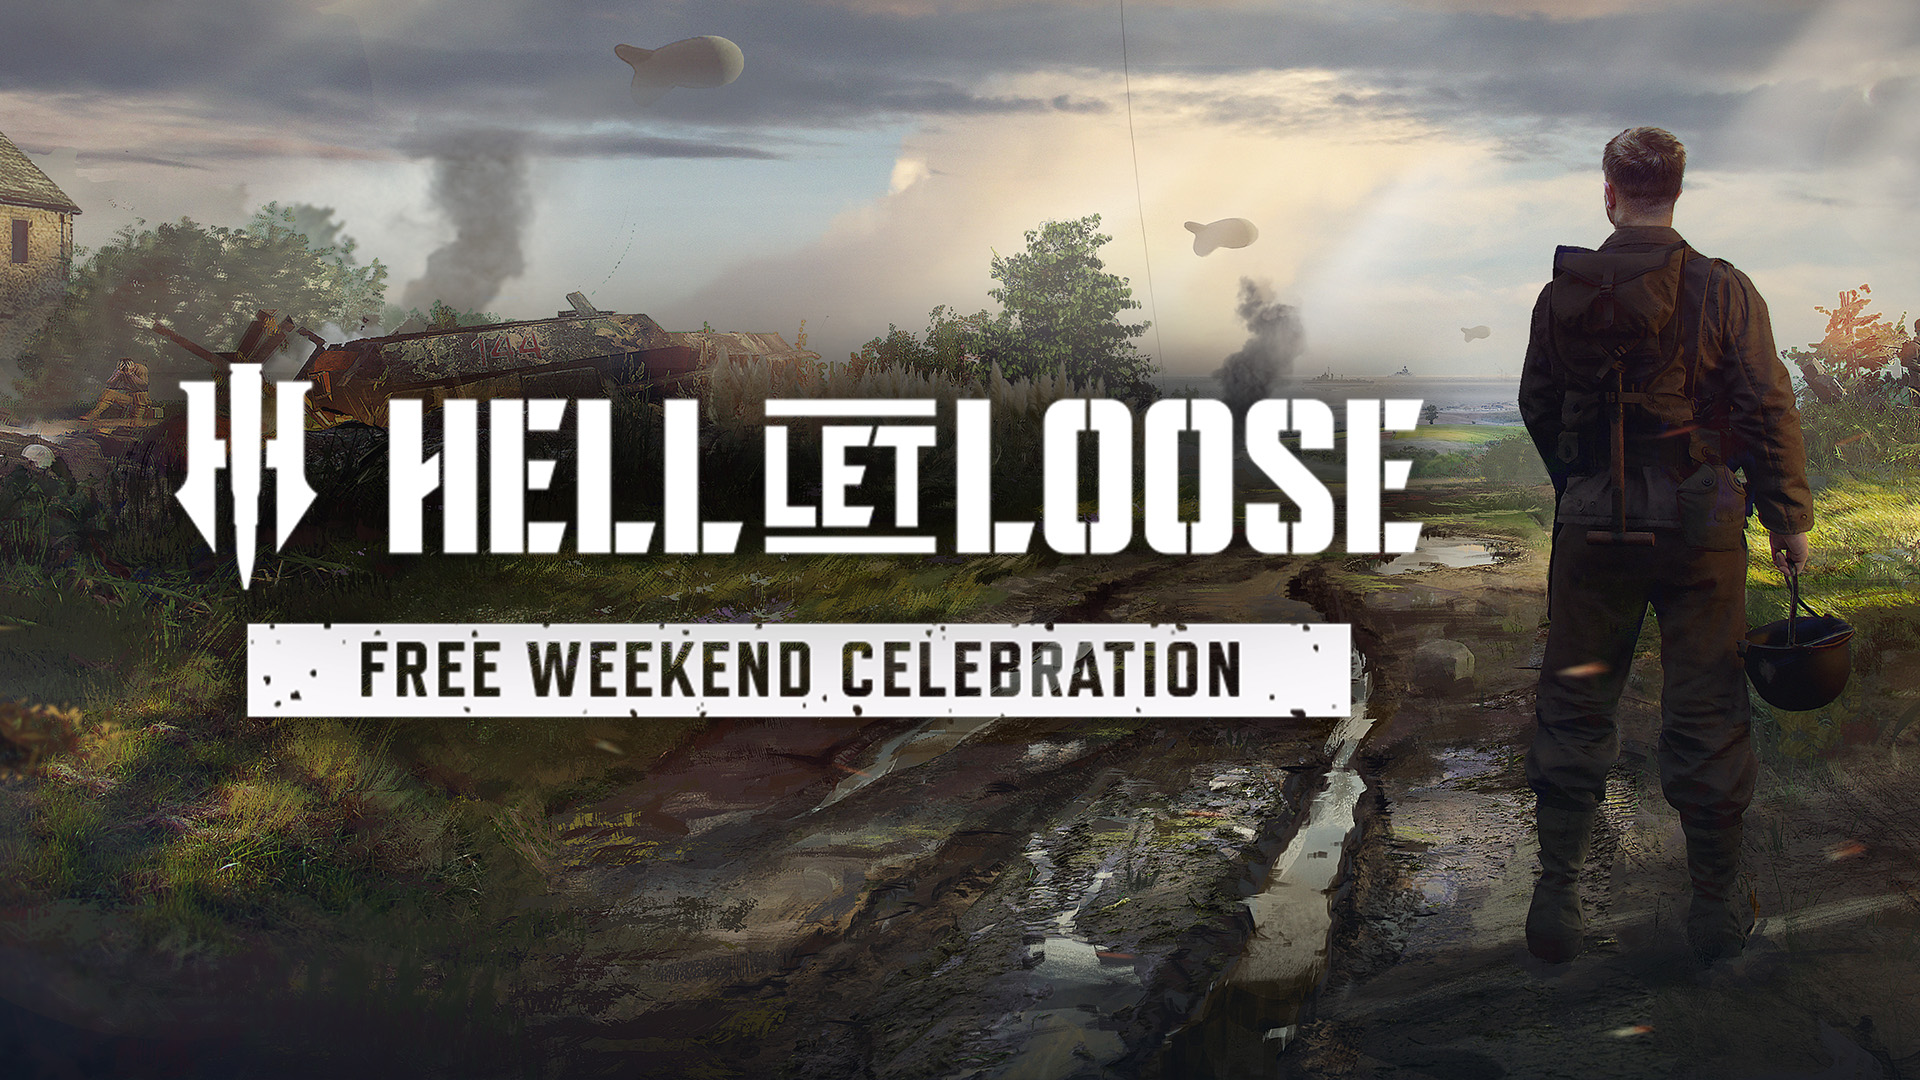 Hell Let Loose está grátis para jogar no PC (Steam)